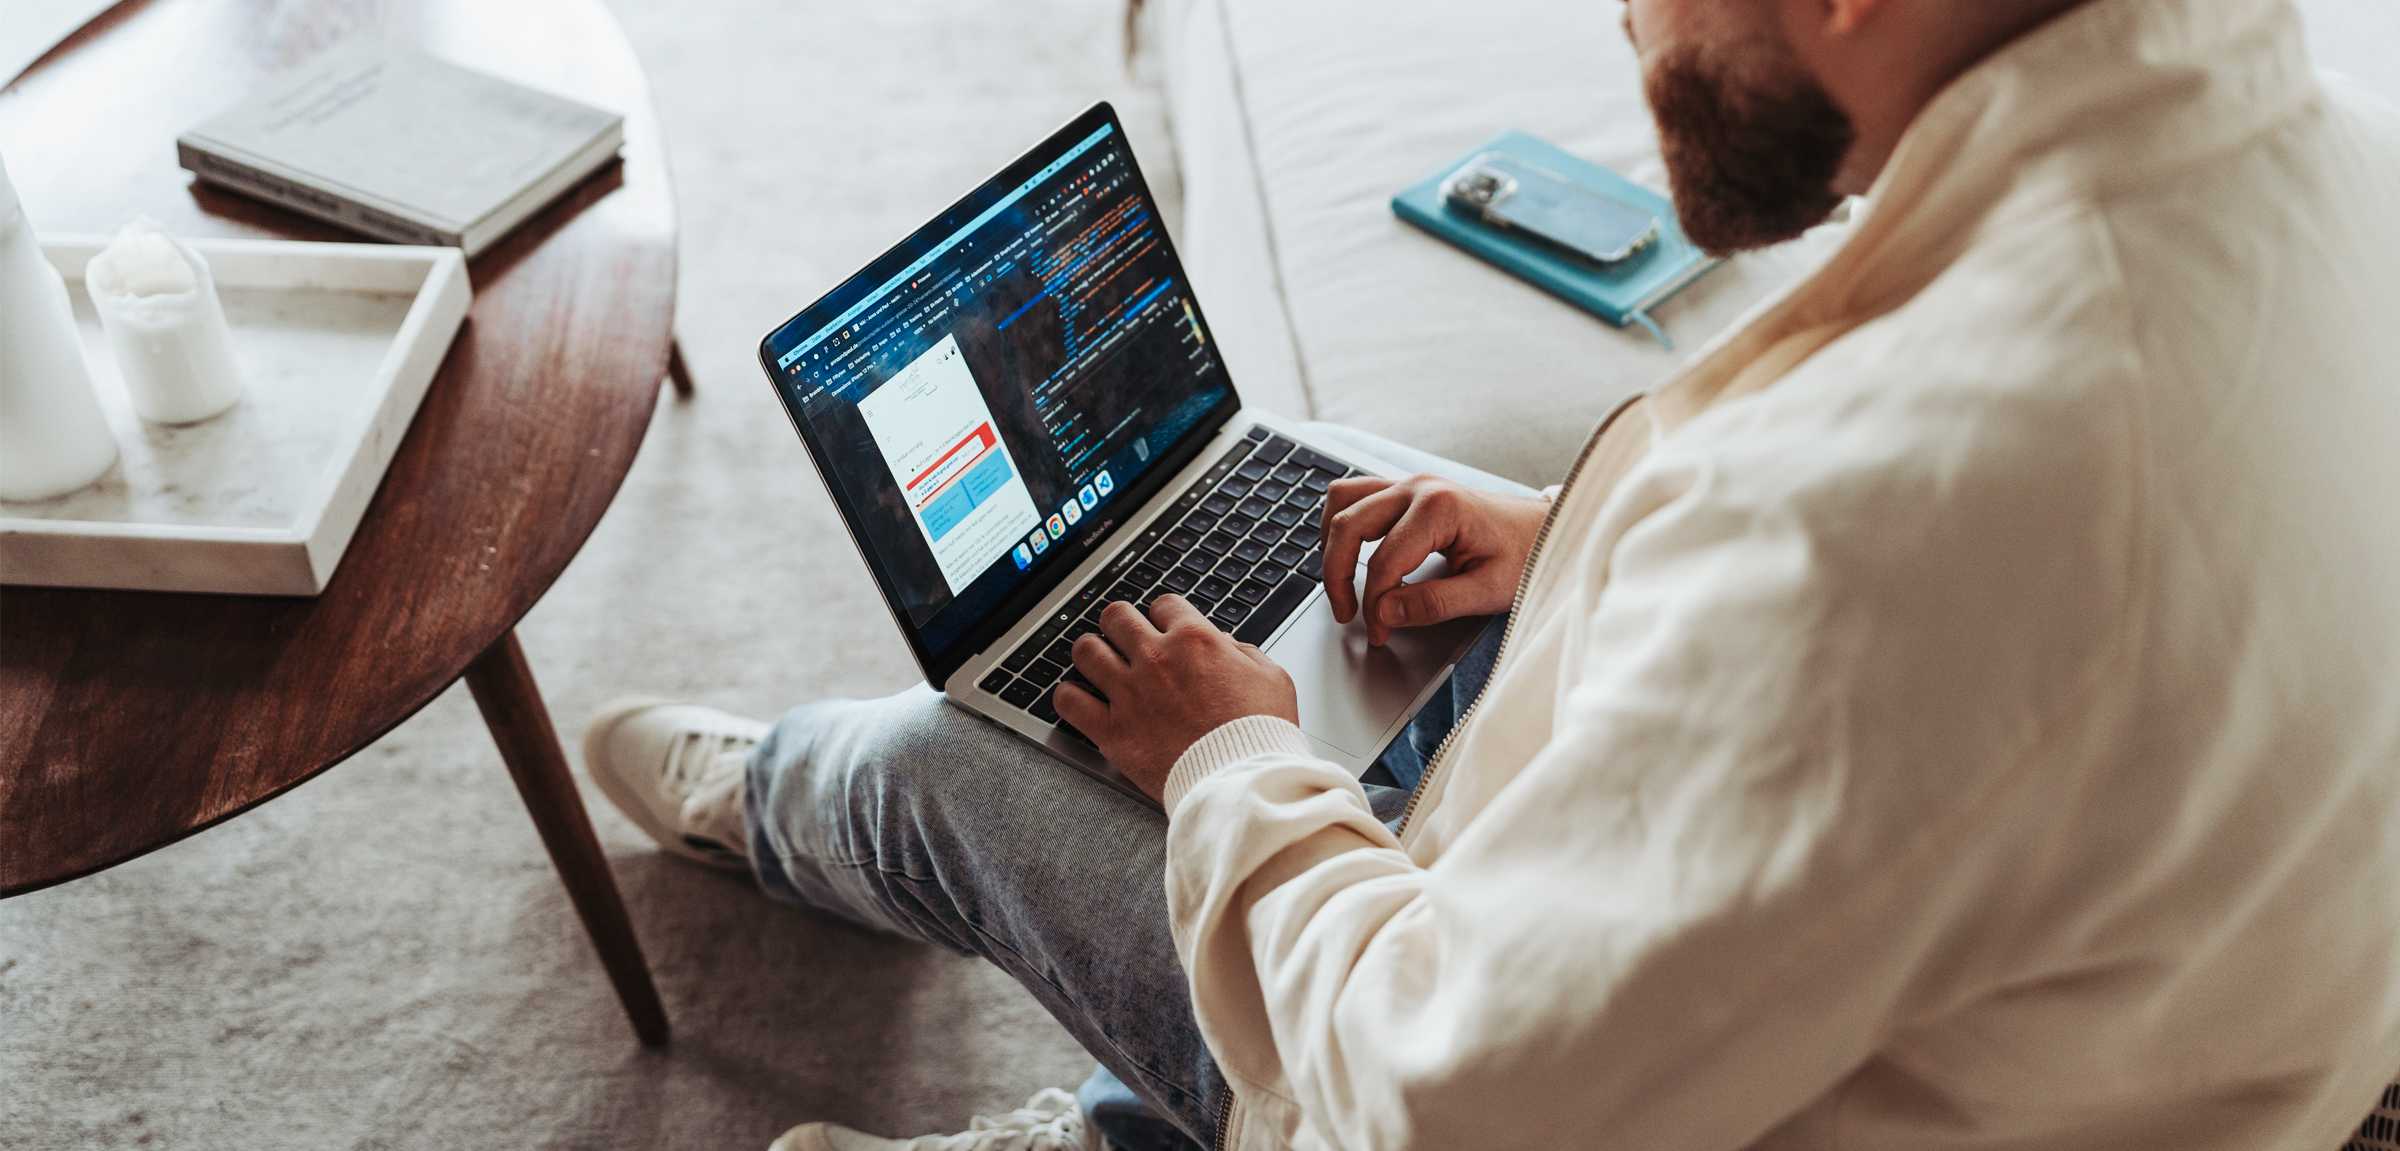 Ein Mann sitzt auf einem Sofa und arbeitet an einem Laptop. Auf dem Laptop ist ein Online-Shop zu sehen. Links steht ein Tisch, rechts auf dem Sofa liegen ein Buch und ein Smartphone.